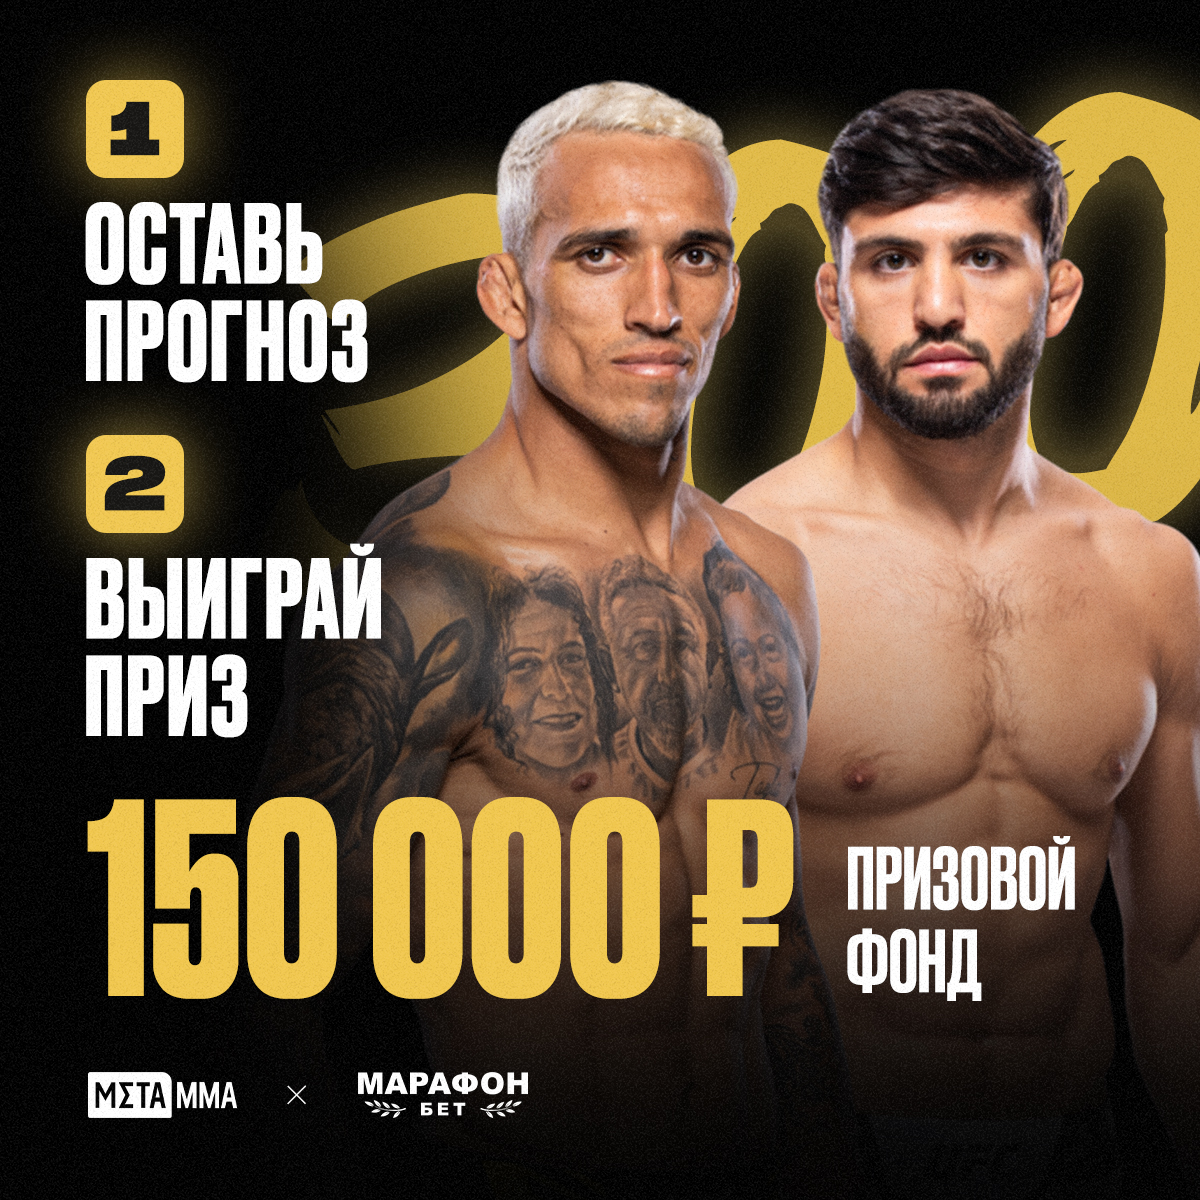 Бесплатный конкурс-прогноз с призами на UFC 300